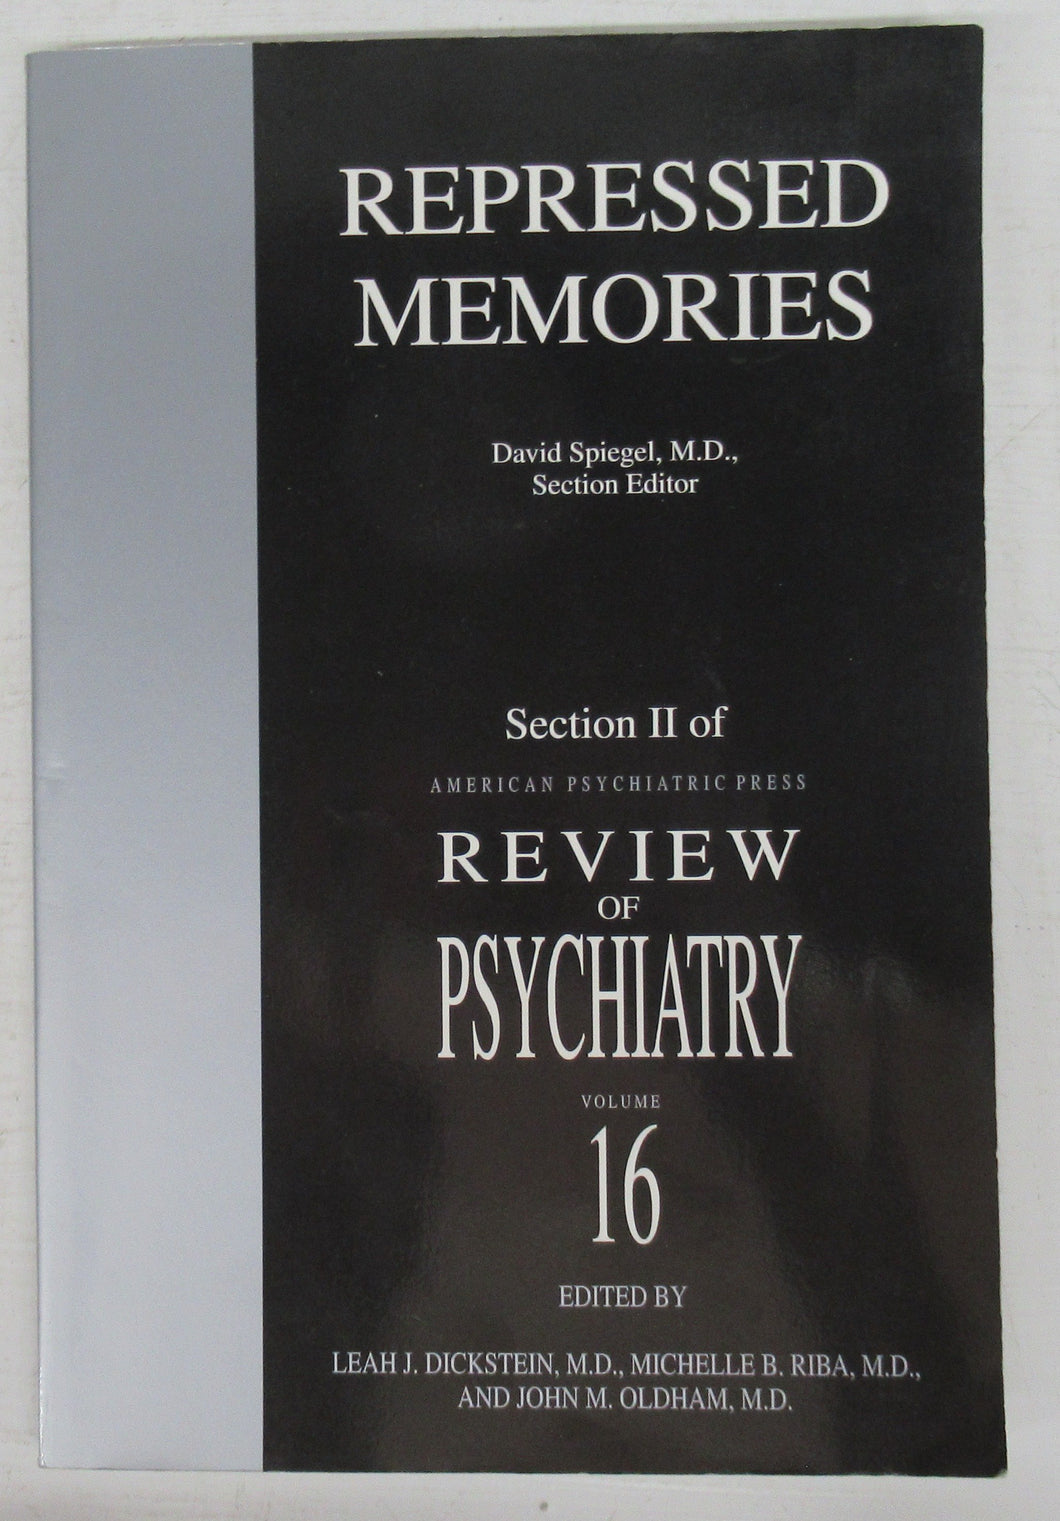 Repressed Memories: Section II of American Psychiatric Press Review of Psychiatry Vol. 16